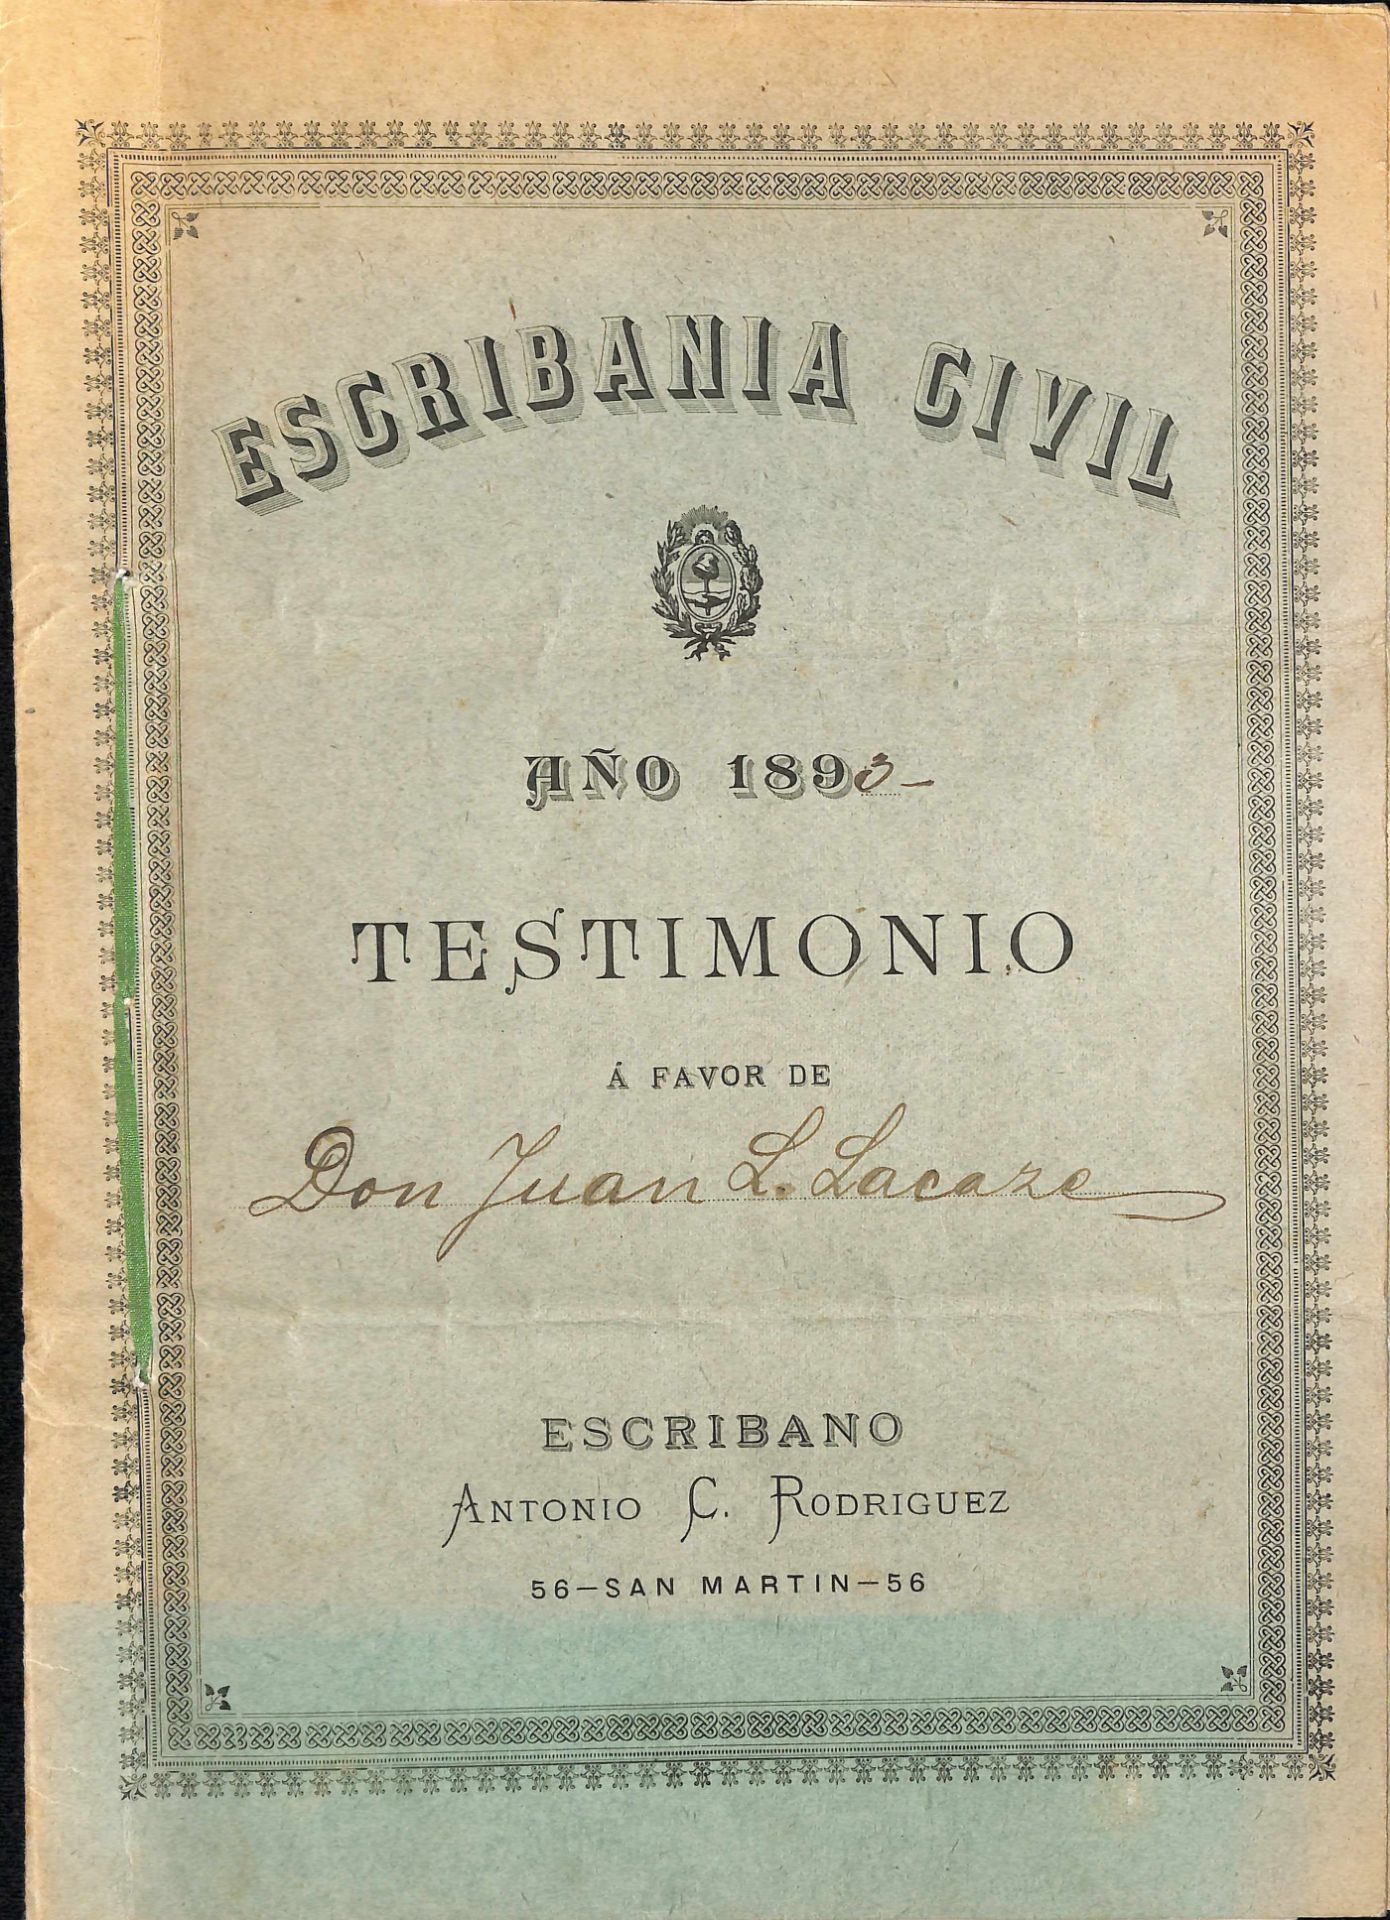 G.B. - Revenues / Argentina 1893. Buenos Aires British Consulate printed Notary Public authorisation